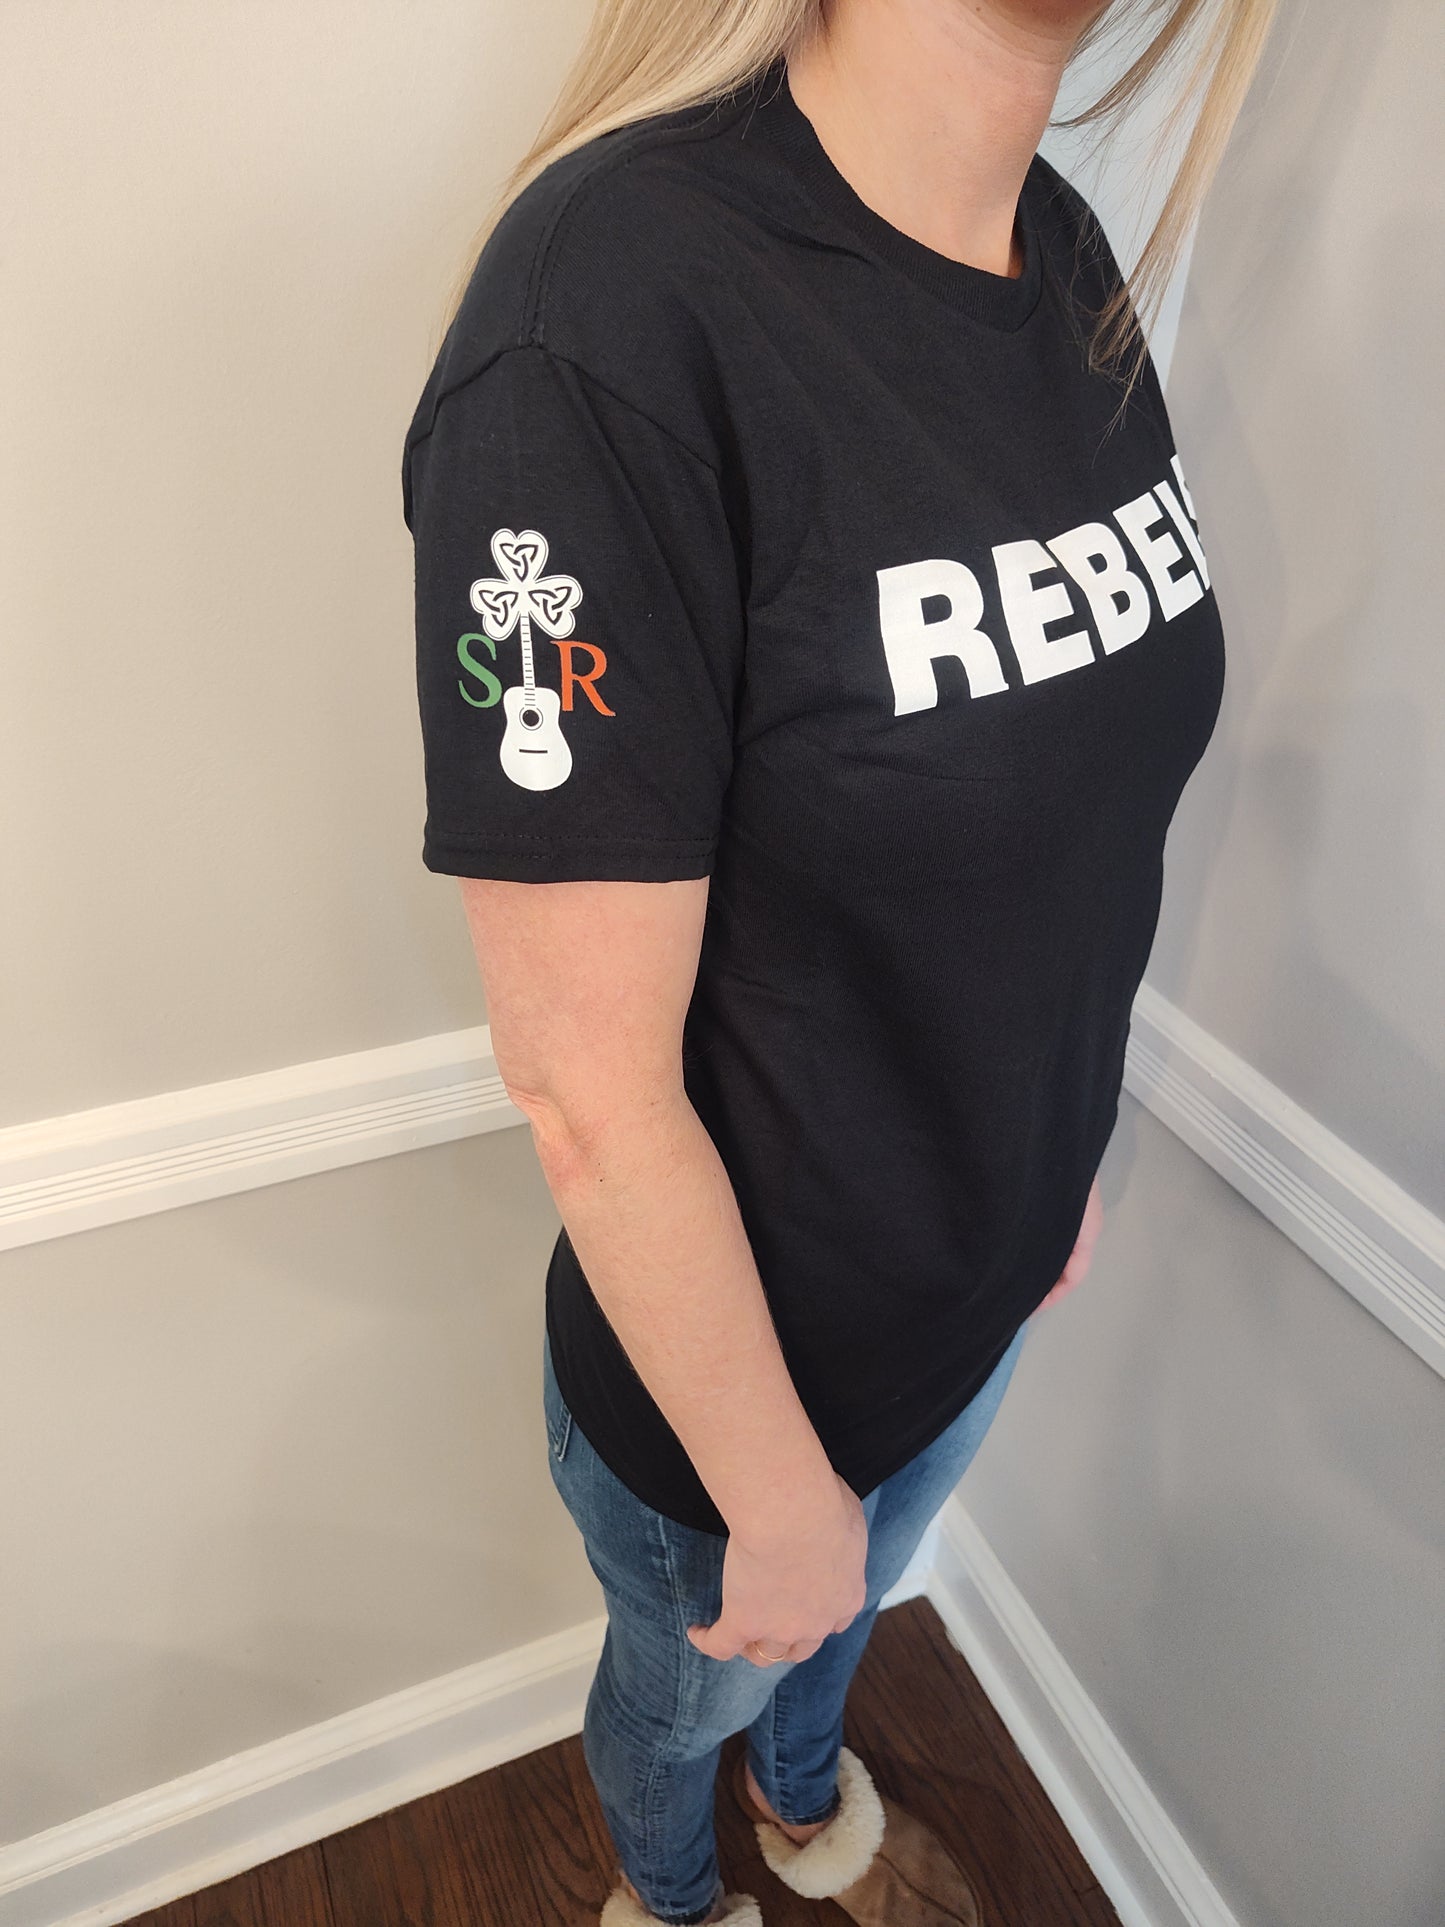 Sheridan Rúitín REBELS T-shirt